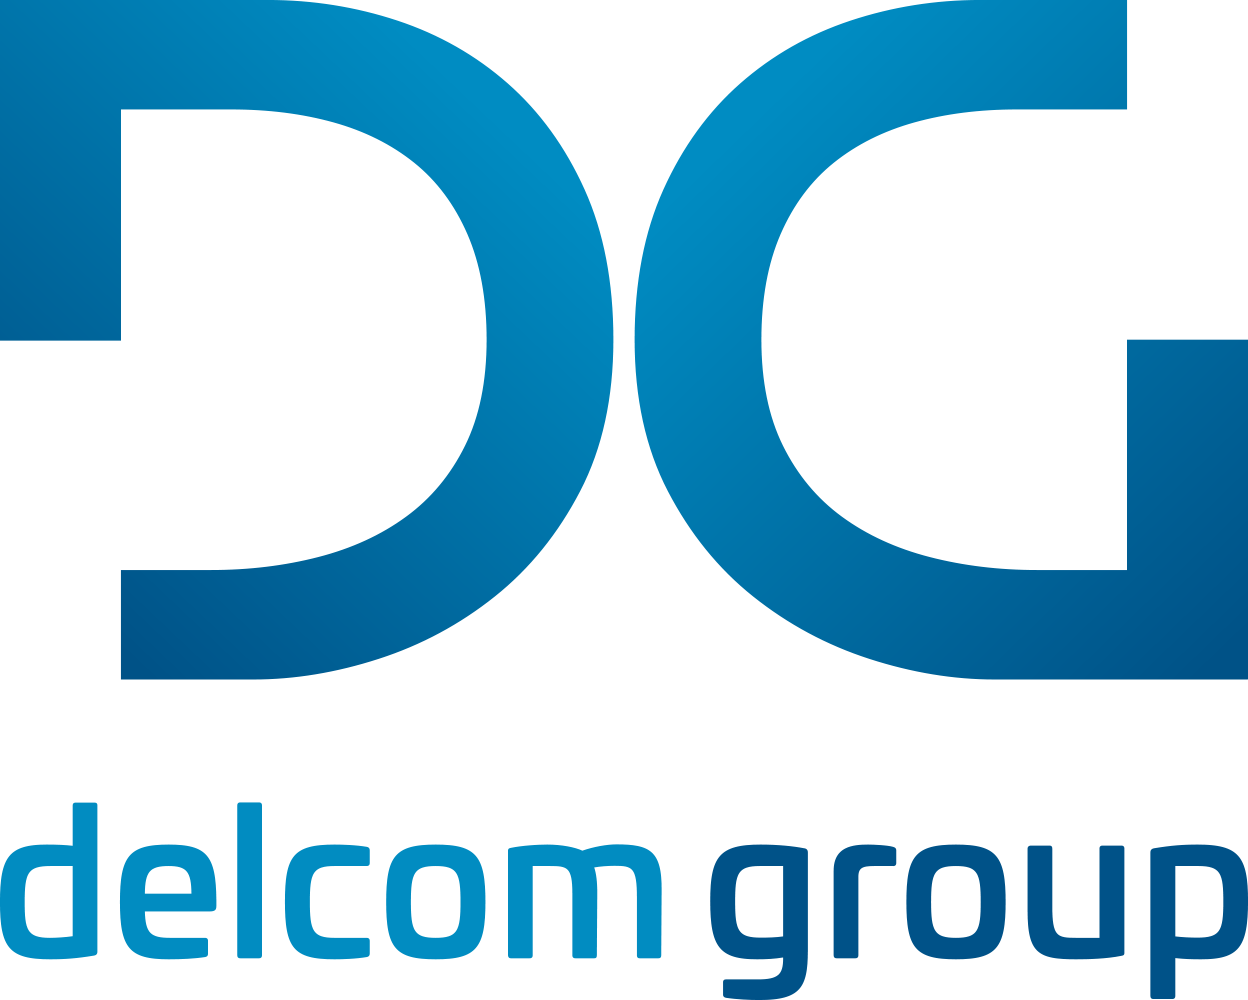 Delcom Group